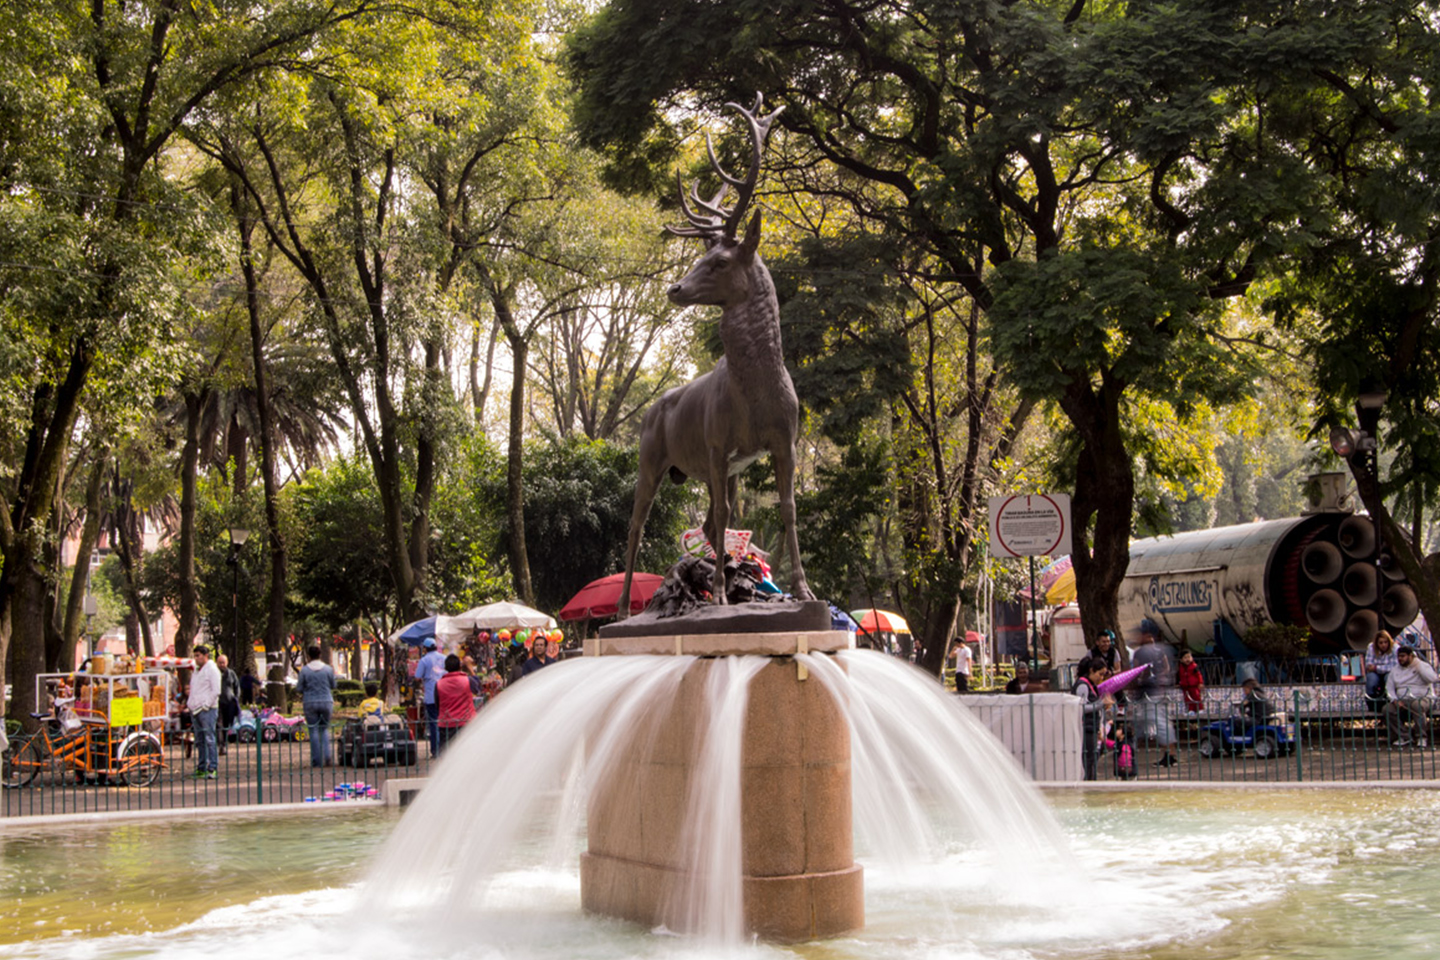 Fuente del parque de los venados, en el cual encima hay una estatua de un venado, en el fondo se aprecia a la gente disfruntando su día